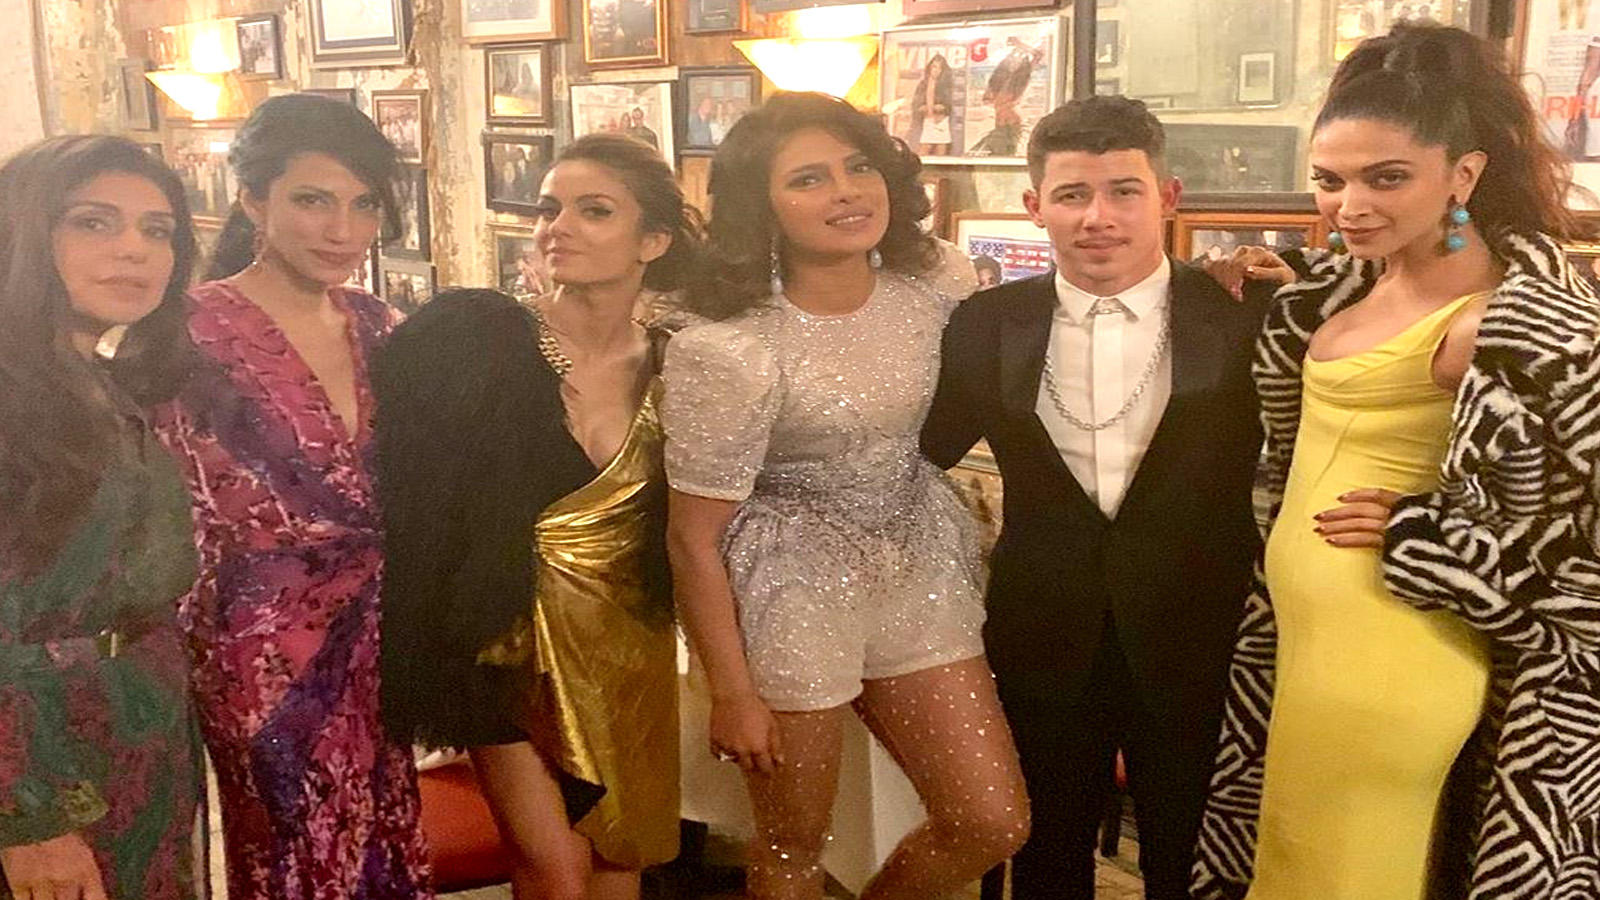 Priyanka Chopra in Dior, 2019 Met Gala  Met gala looks, Formal dresses  long, Met gala